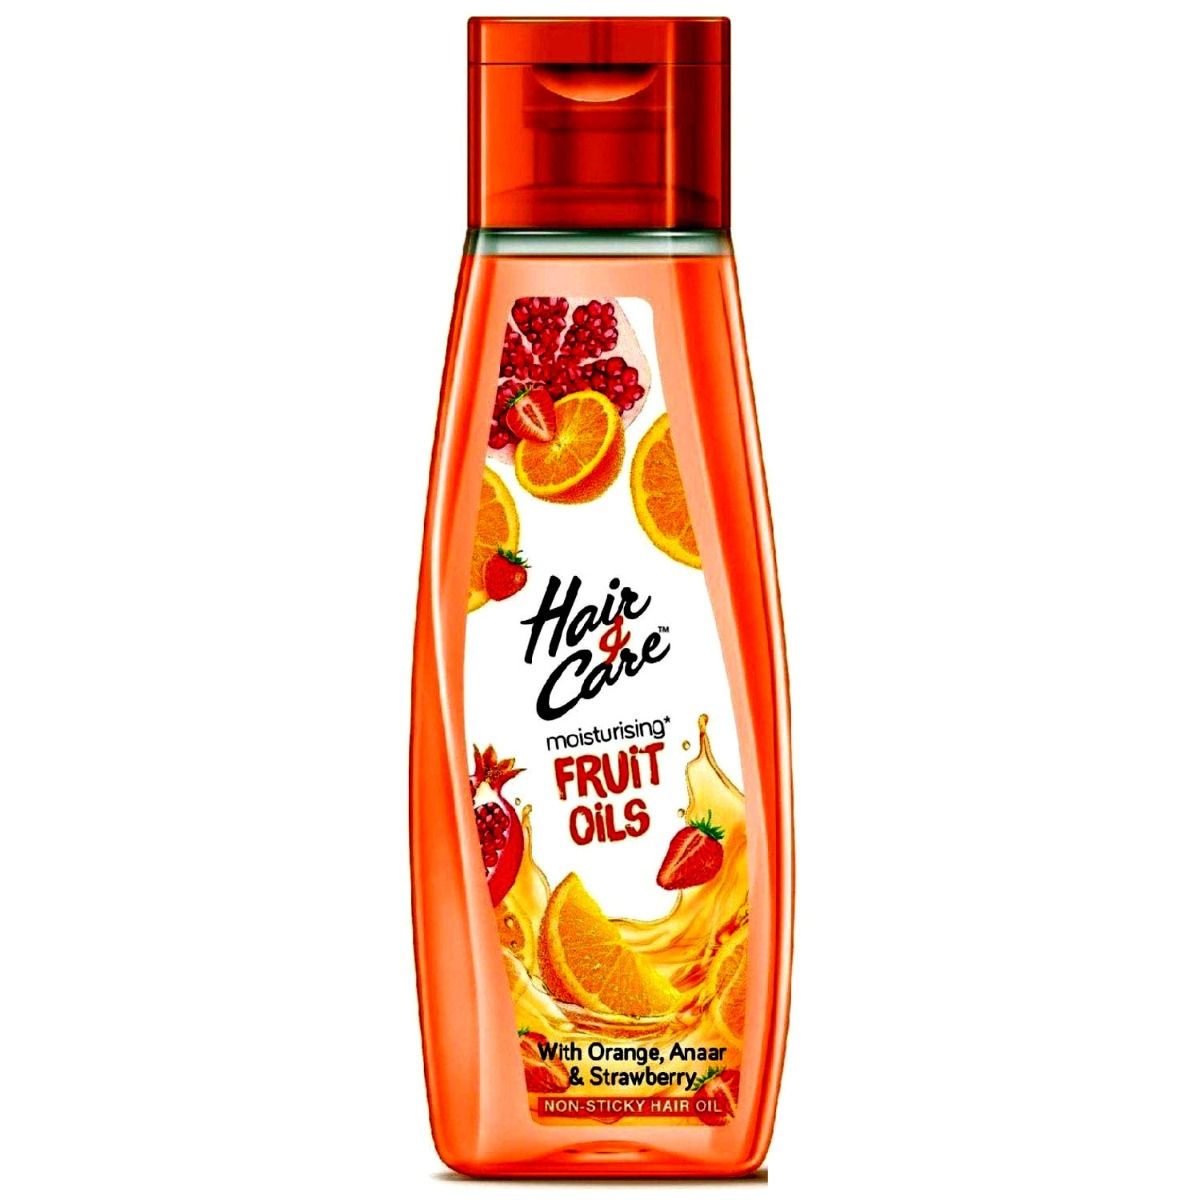 Hair & Care Moisturising Fruit Oils Non Sticky Hair Oil, 100 ml, Pack of 1 